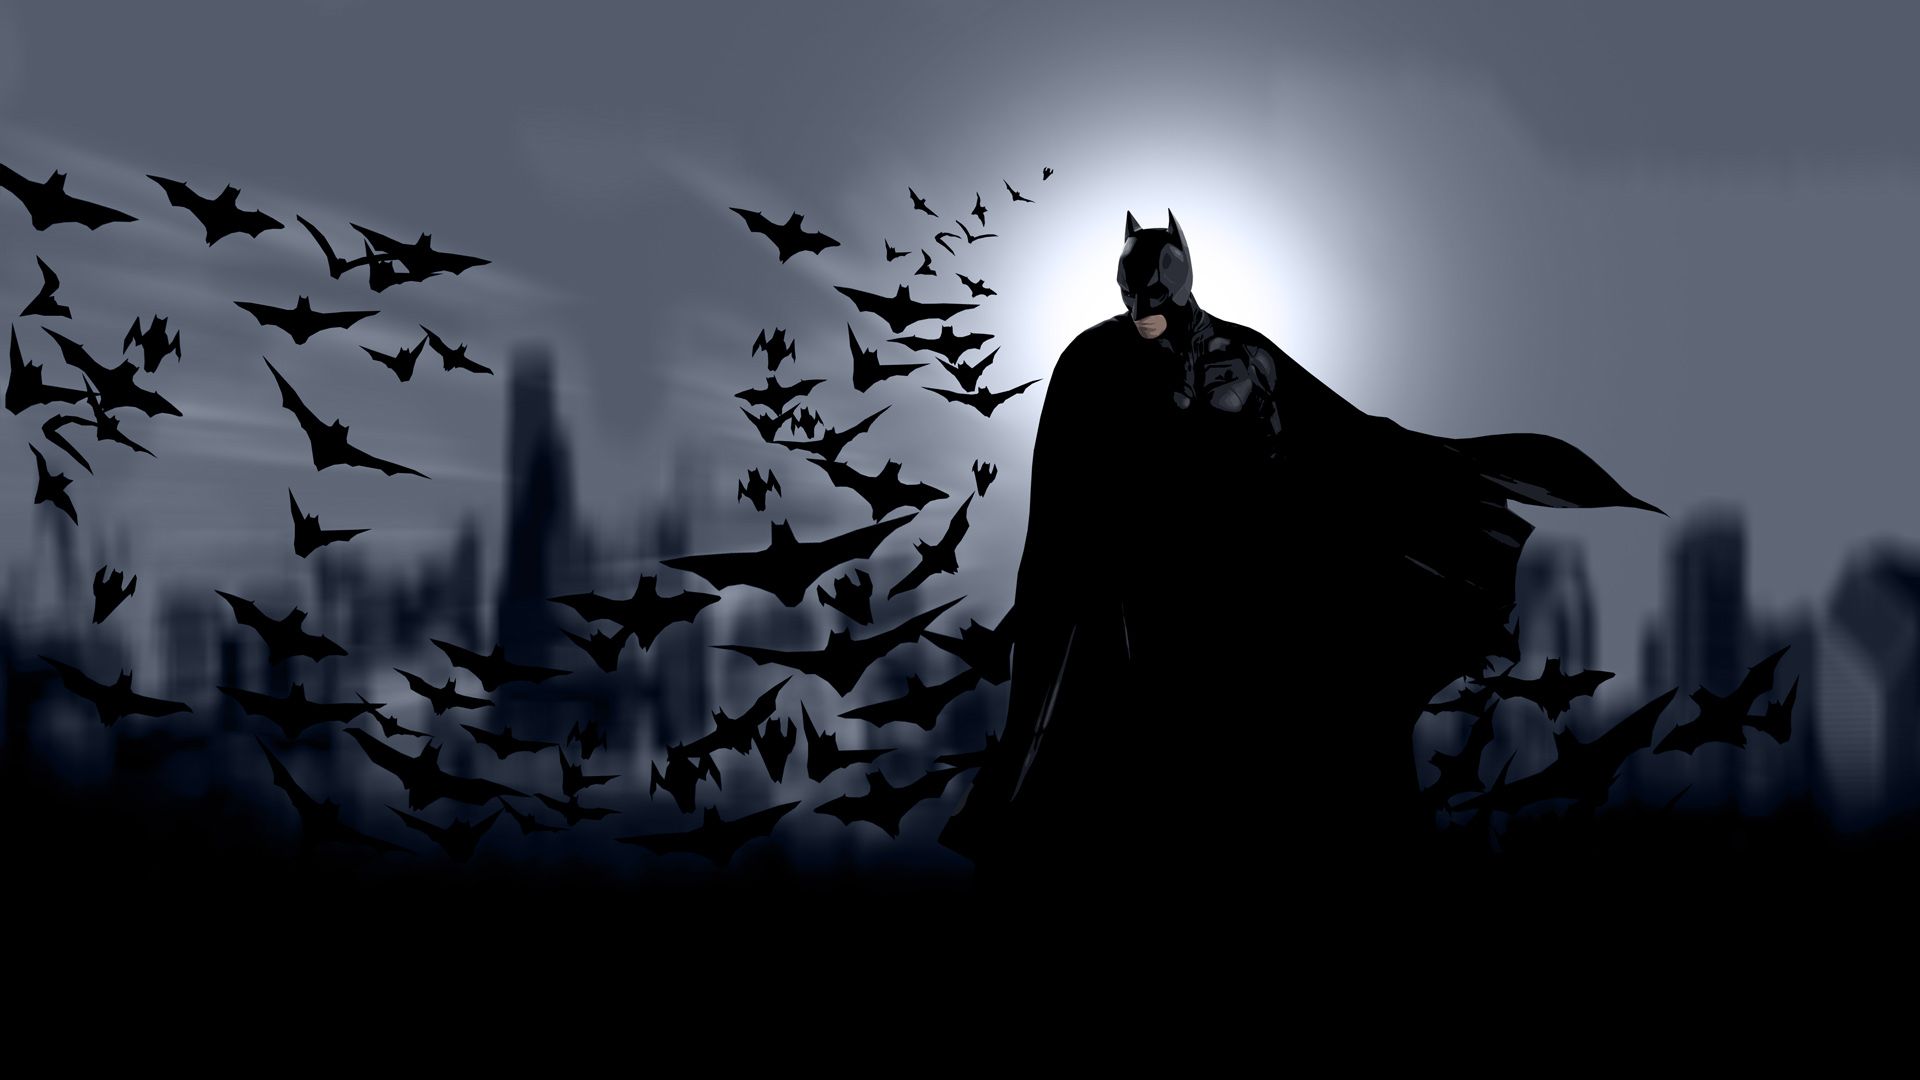 Hãy thử xem bộ sưu tập Hình nền máy tính Batman đầy oán khích và đẫm máu trên trang WallpaperDog. Chúng sẽ khiến bạn cảm thấy như được chứng kiến anh hùng thanh trừng tội ác, đúng với phong cách táo bạo và đầy chất khí phách của Batman.